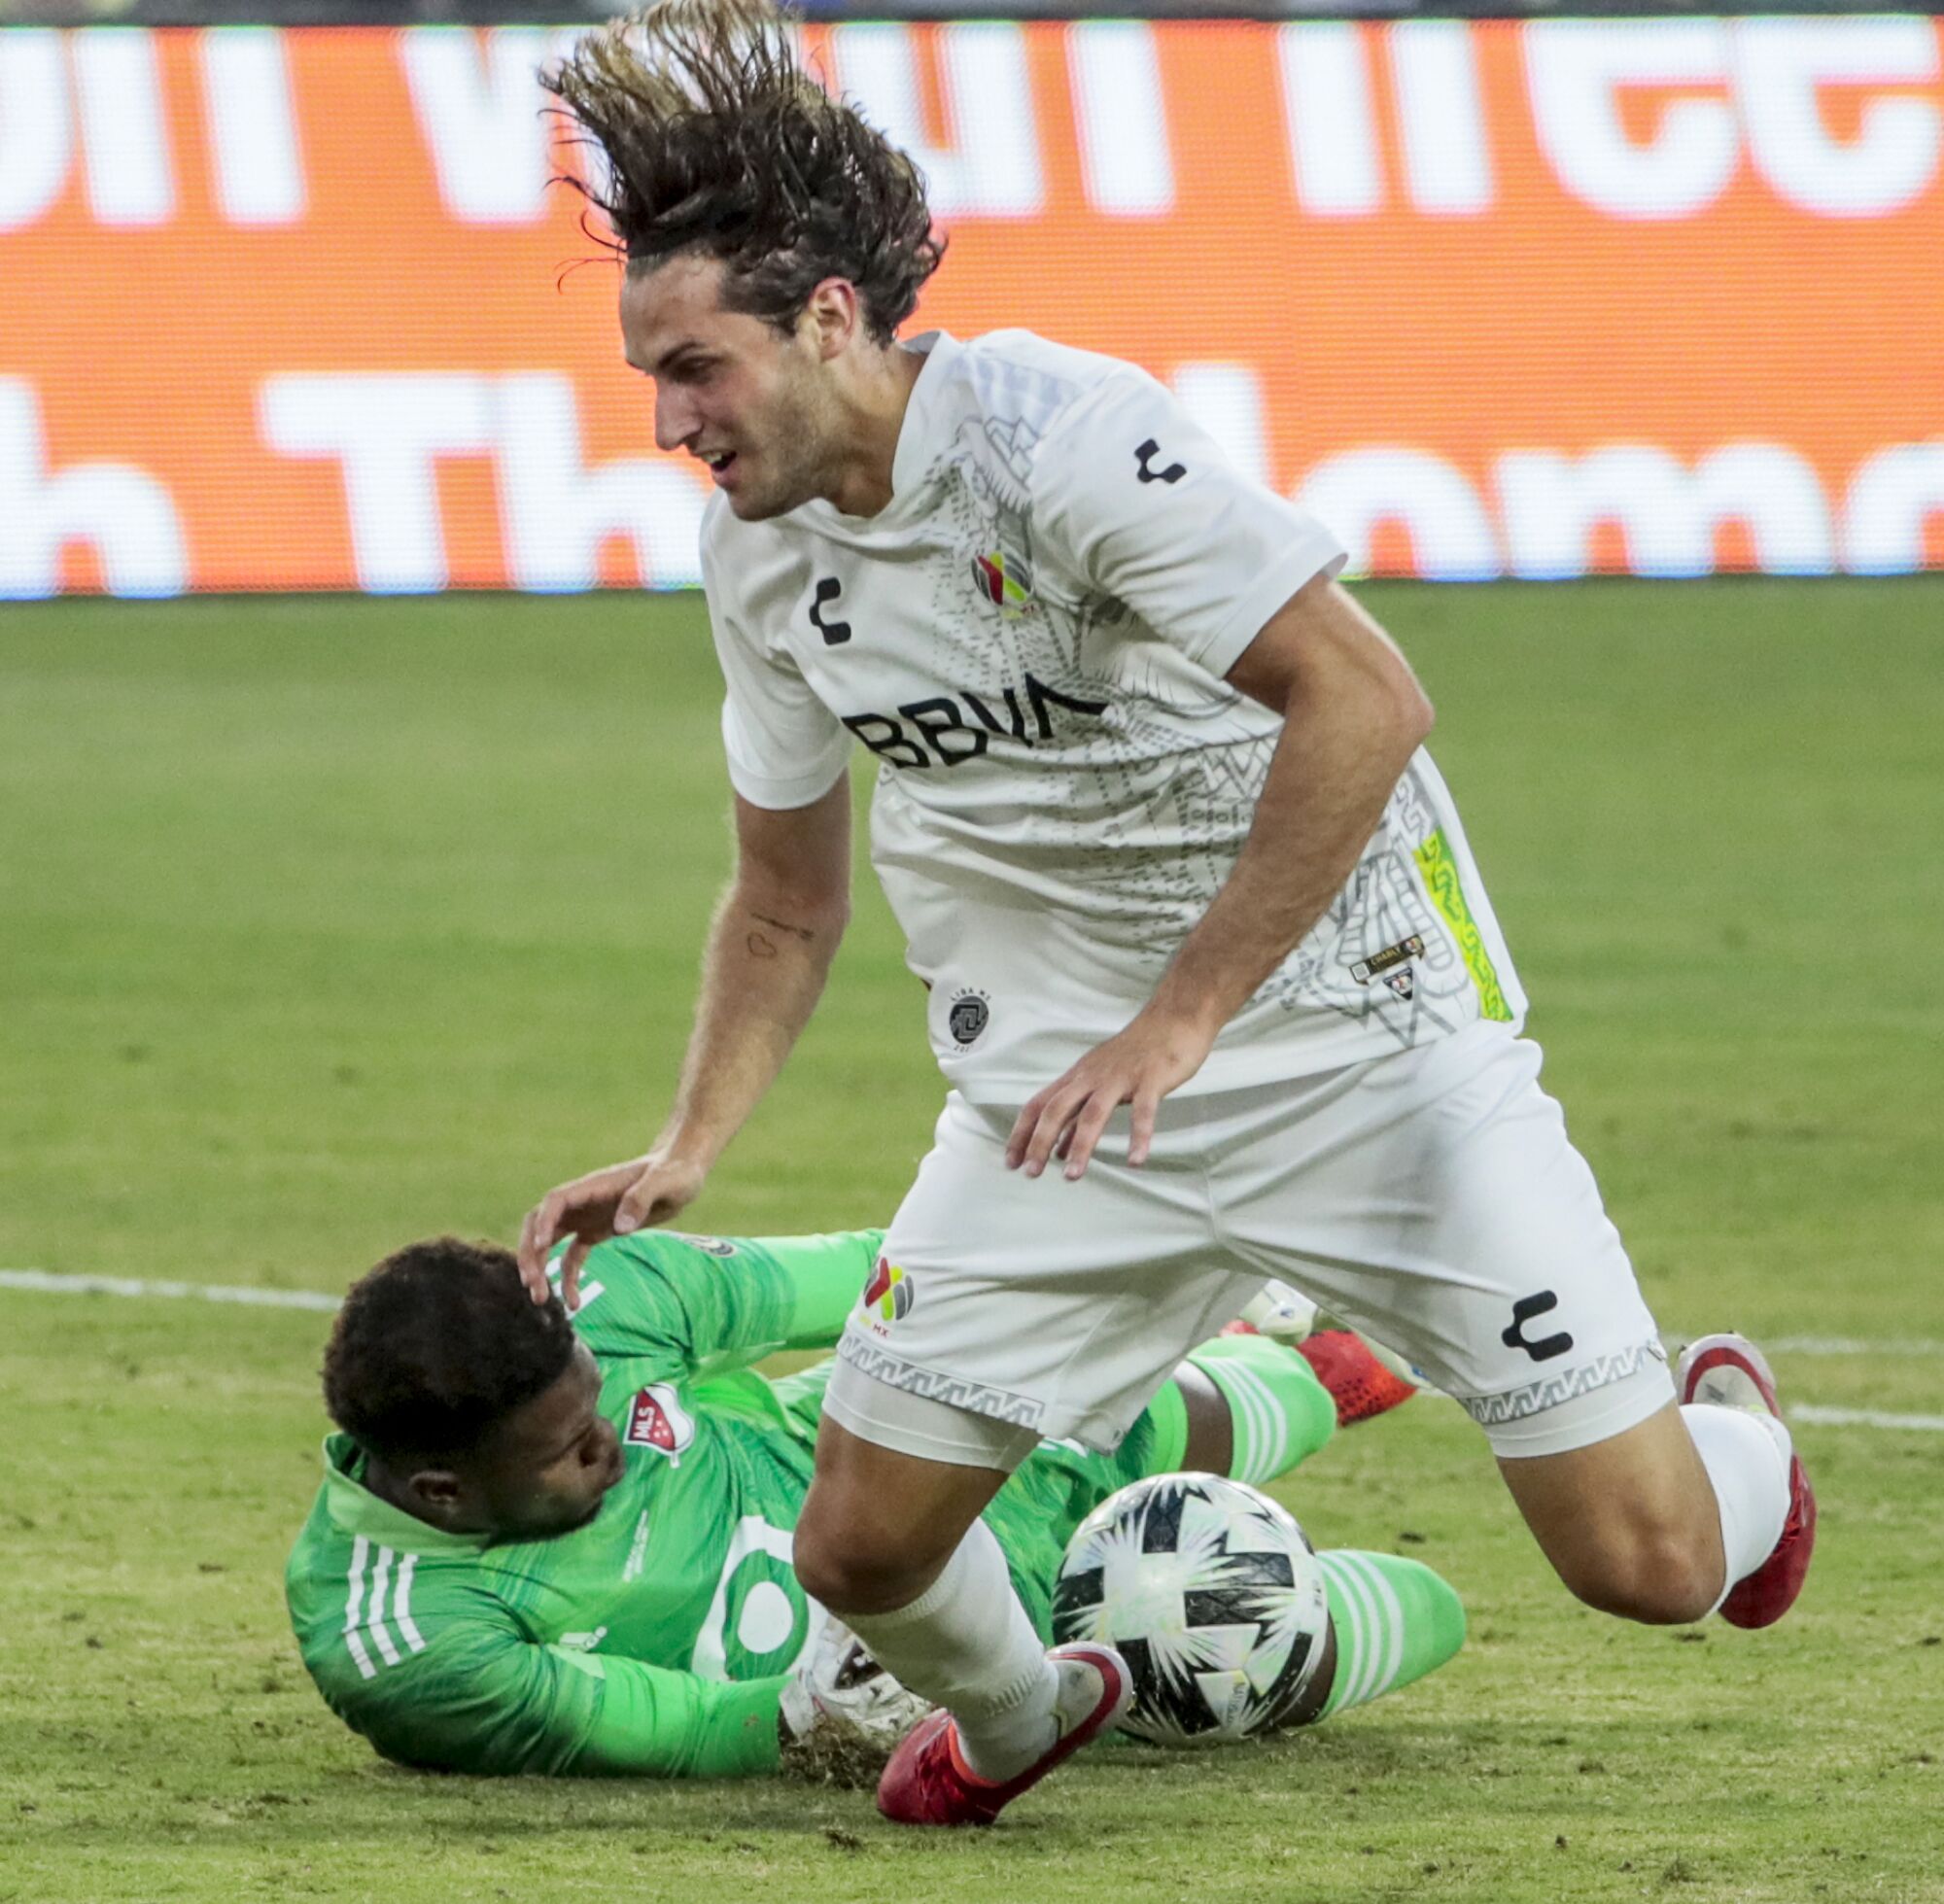 MLS goalie Andre Blake knocks the ball from Liga MX forward Santiago Giminez